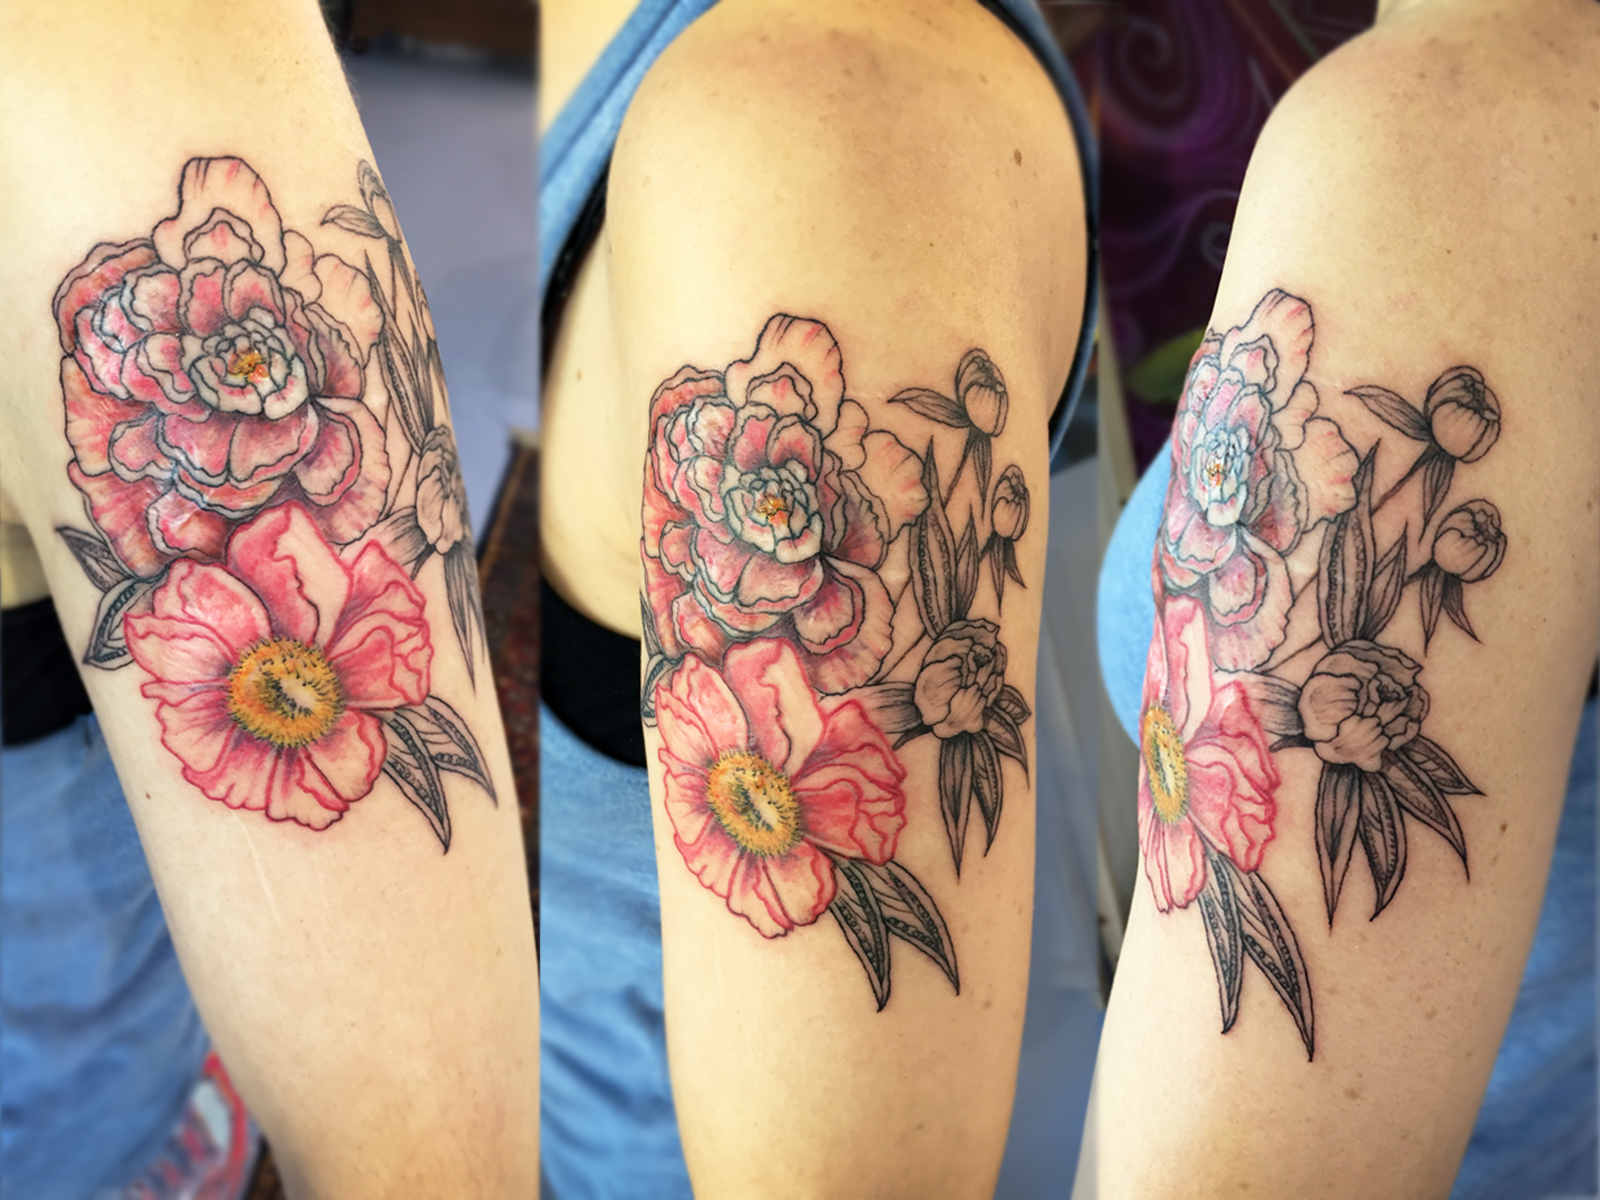 Sie wollte das florale Tattoo hell, die Narben abgedeckt und nicht zu viel Haut tätowiert.